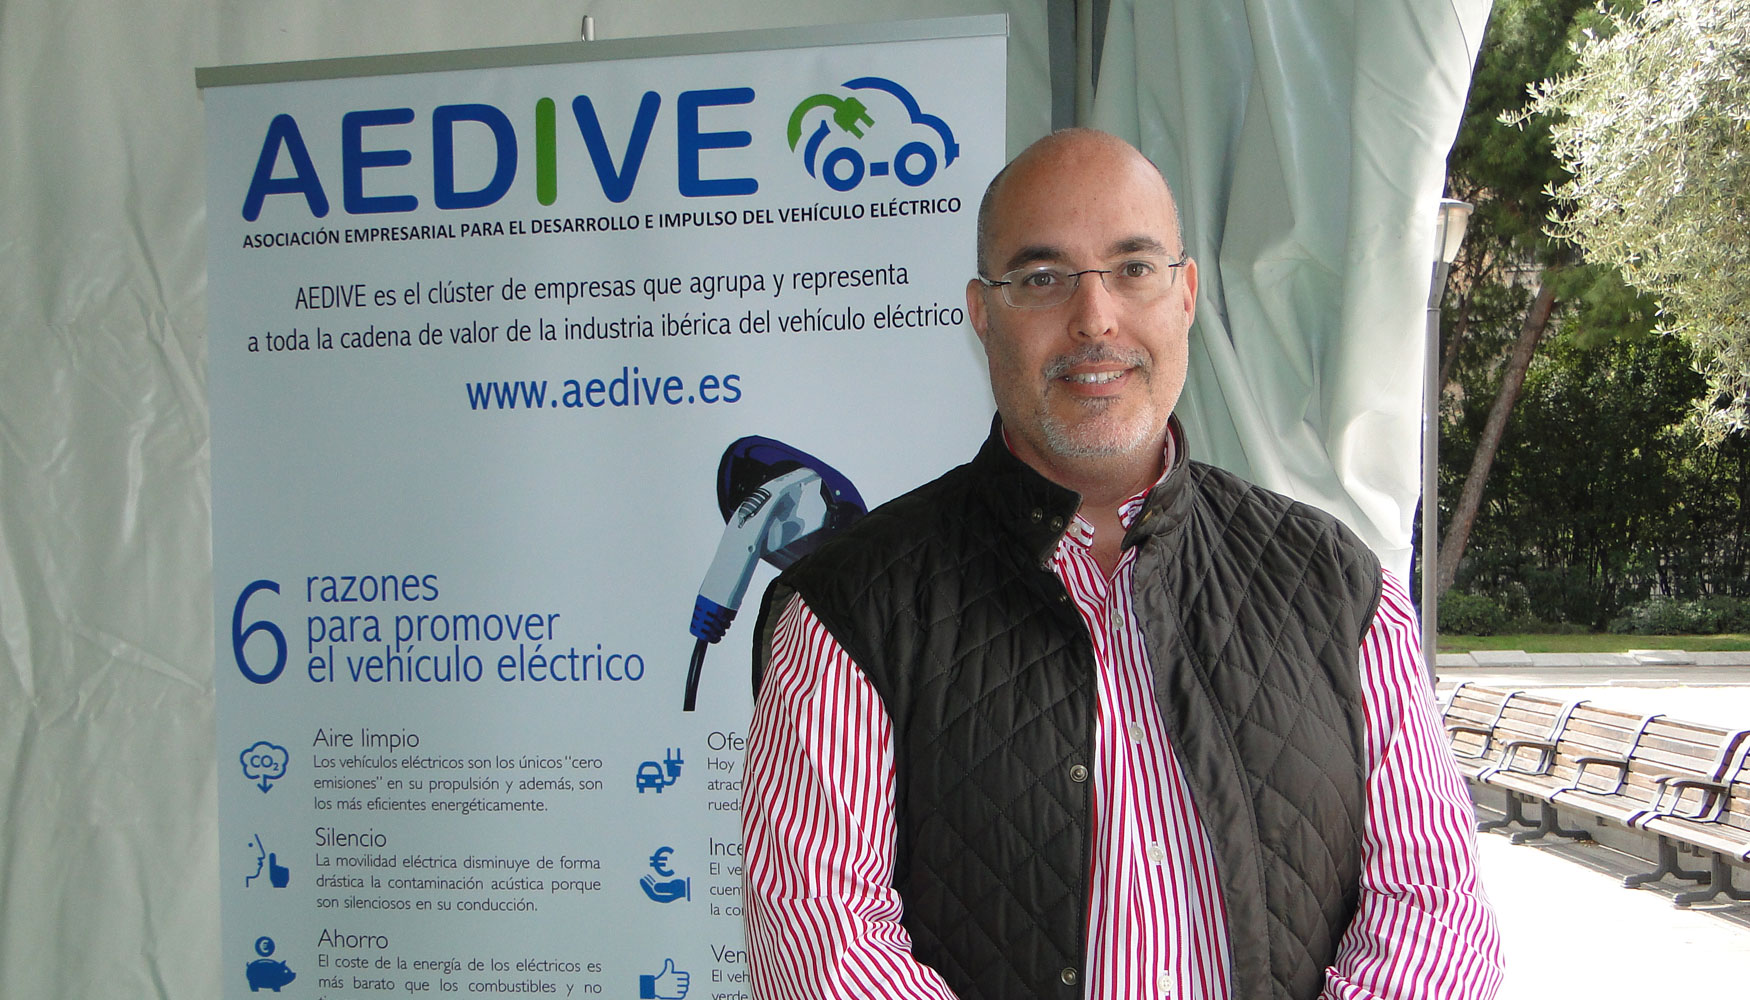 Arturo Prez de Luca, director gerente de Aedive, sobre las ventajas de apostar por la movilidad elctrica